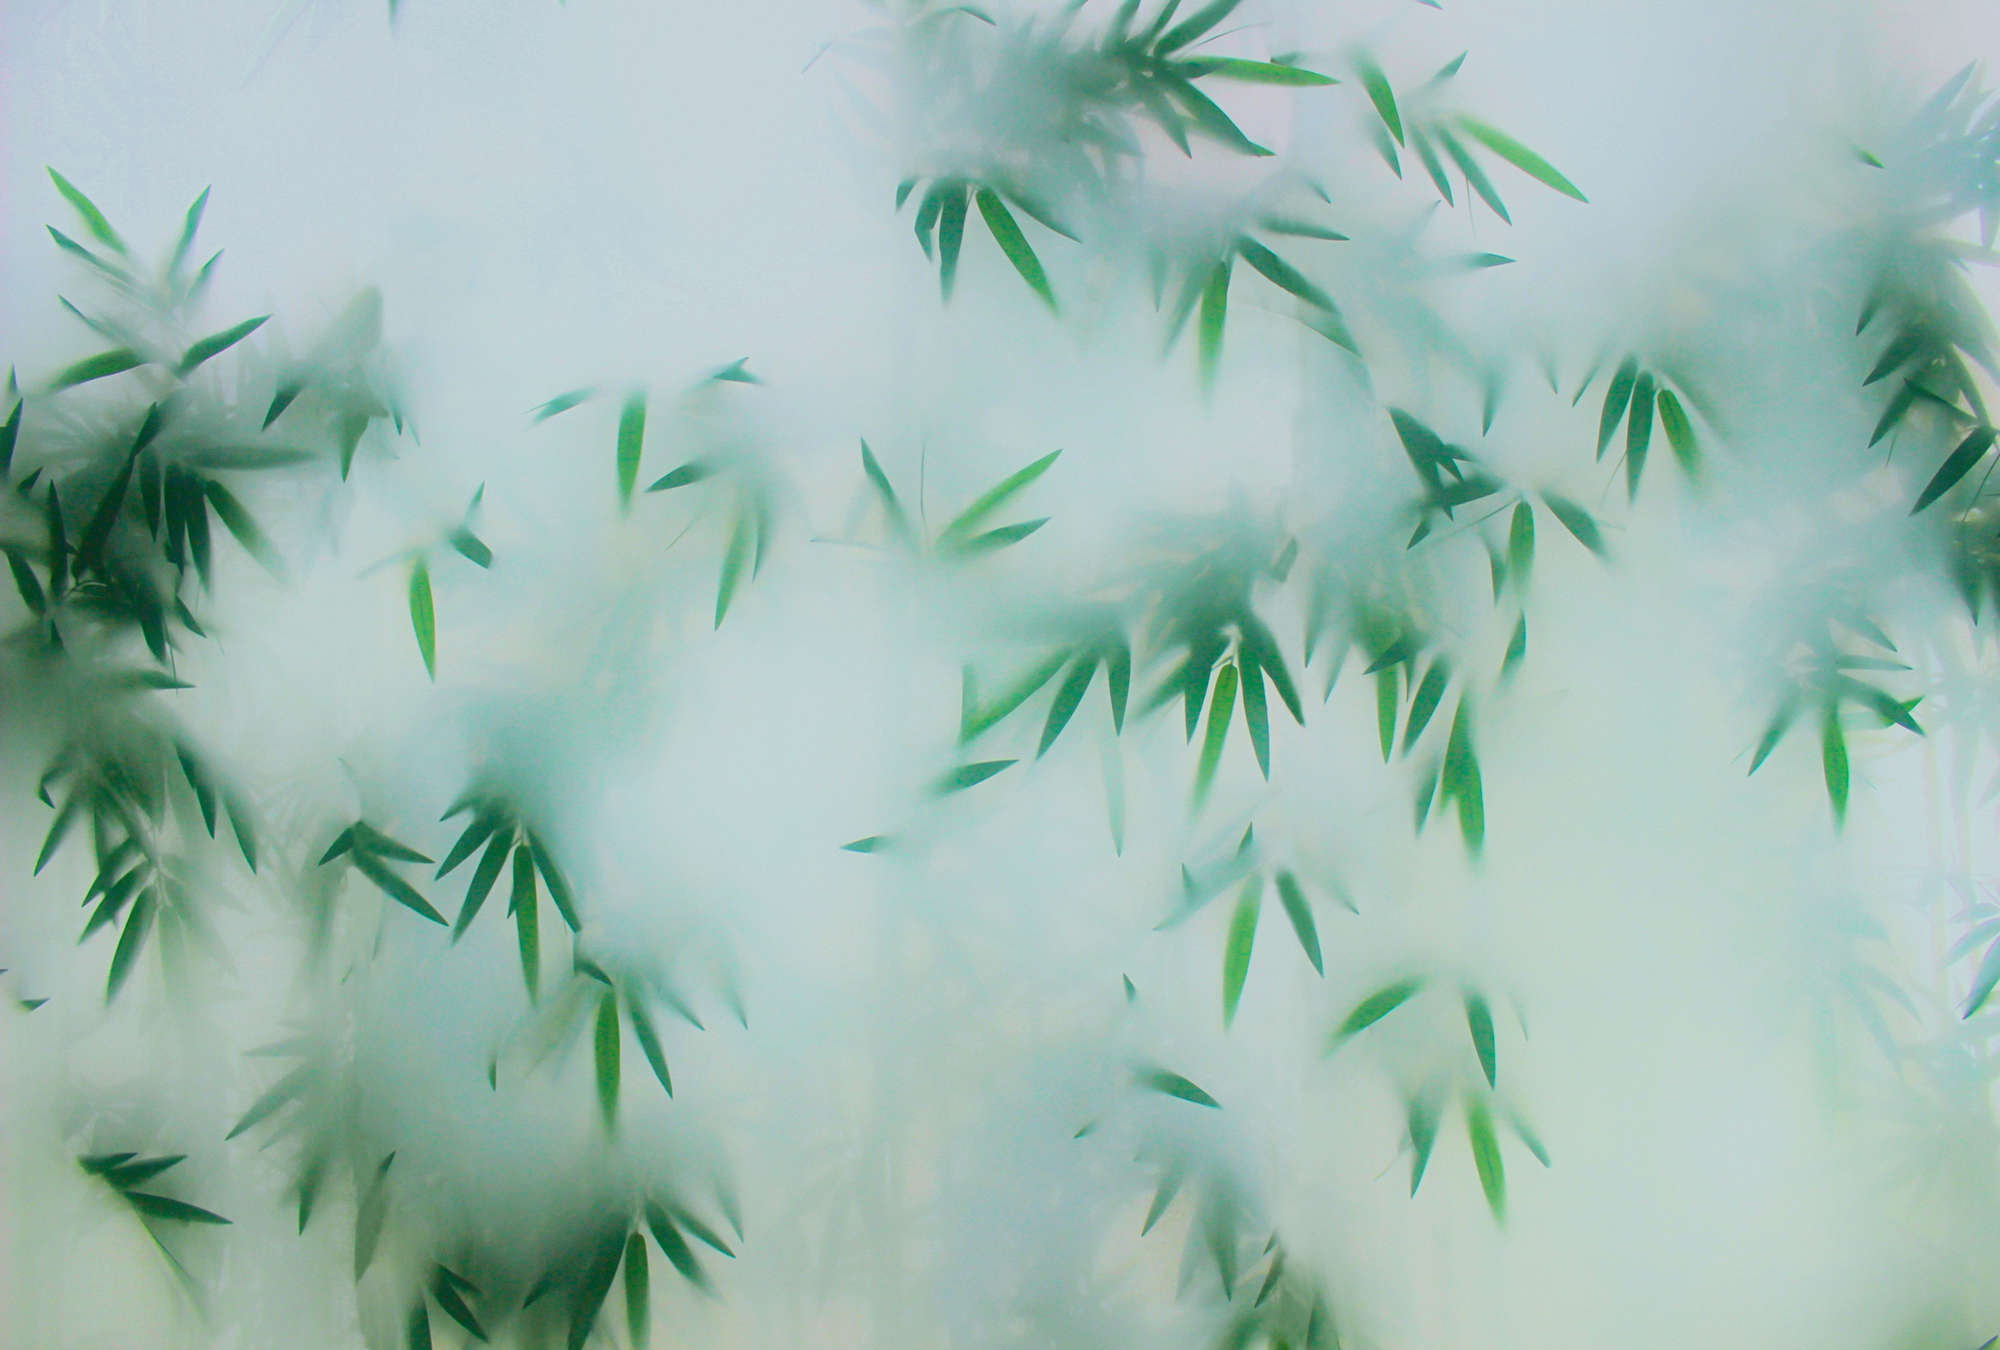             Panda Paradise 1 - Papel pintado de bambú Hojas verdes en la niebla
        